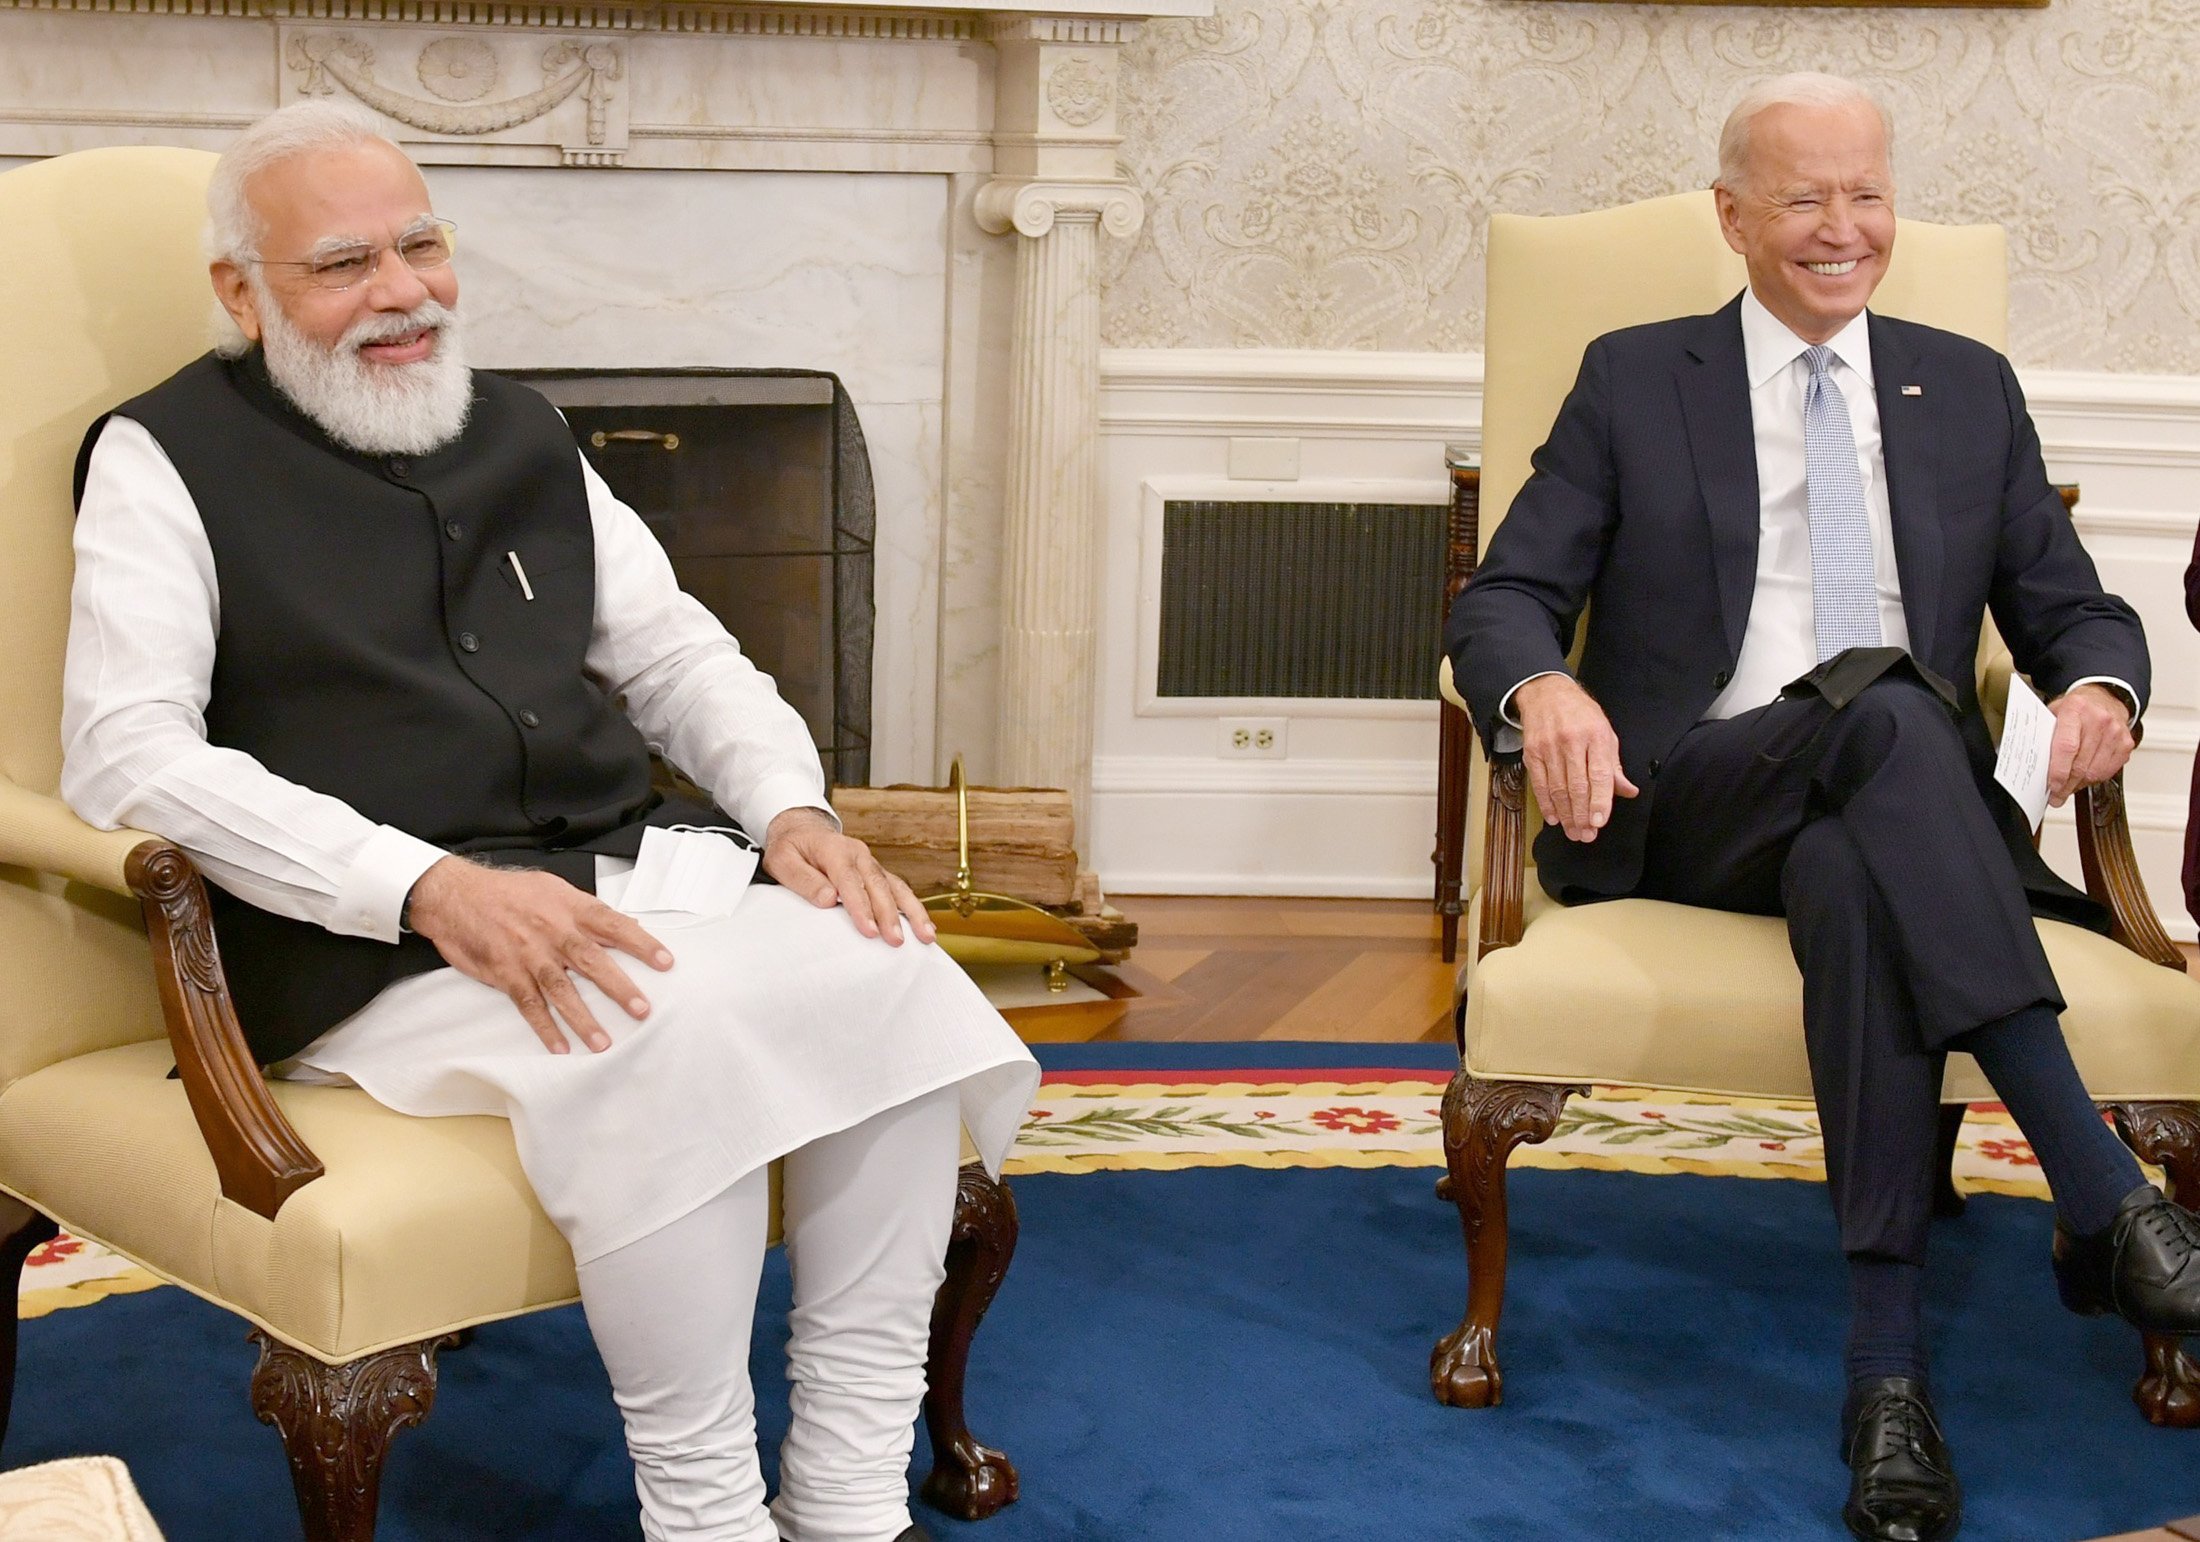 भारत और अमेरिका ने तालिबान से प्रतिबद्धताओं को पूरा करने का आग्रह किया